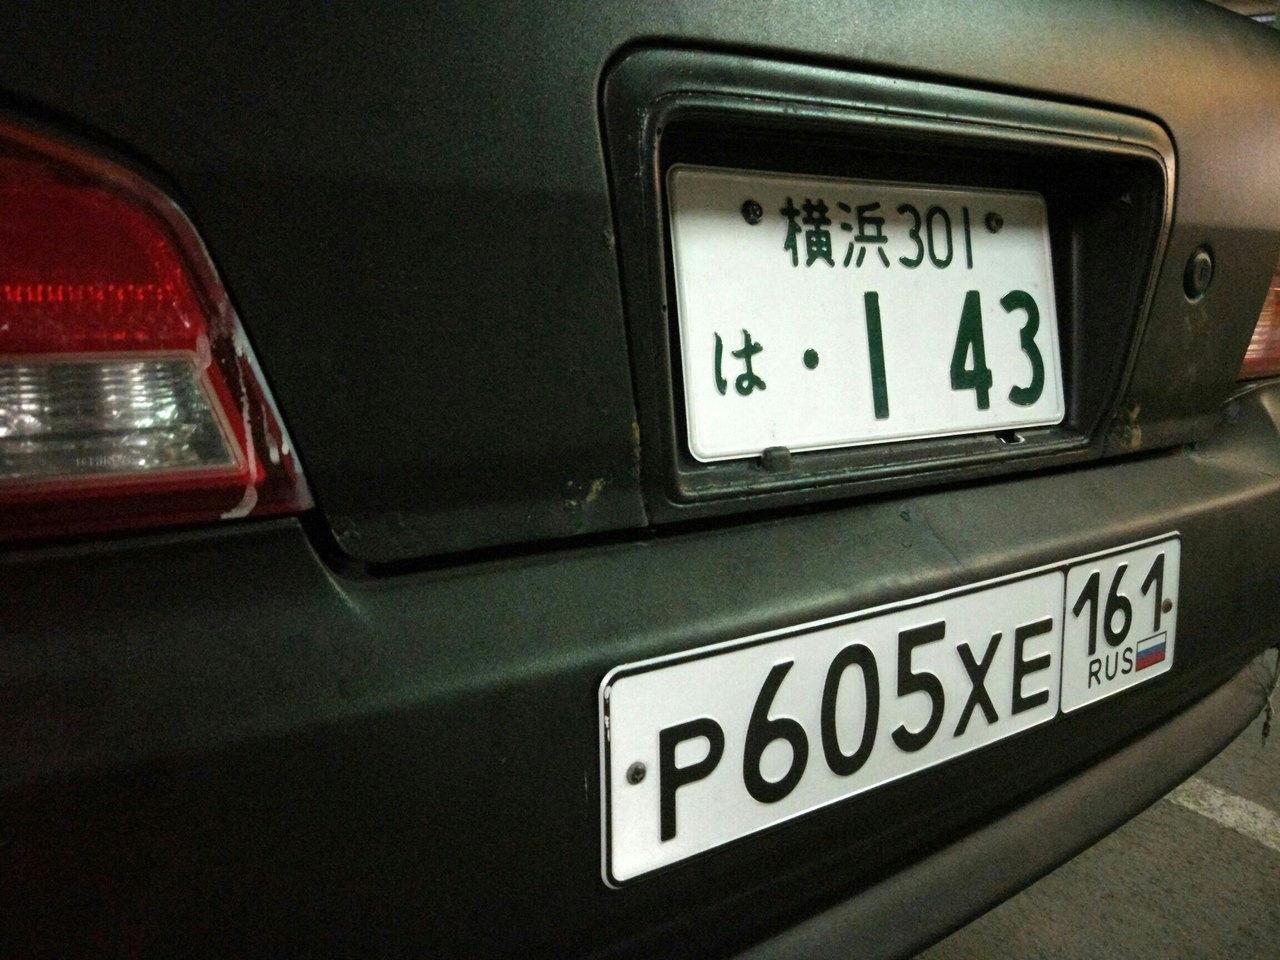 В номера после 14. Номера машин. Номерные знаки на авто. Российские номера машин. Японские номера на авто.